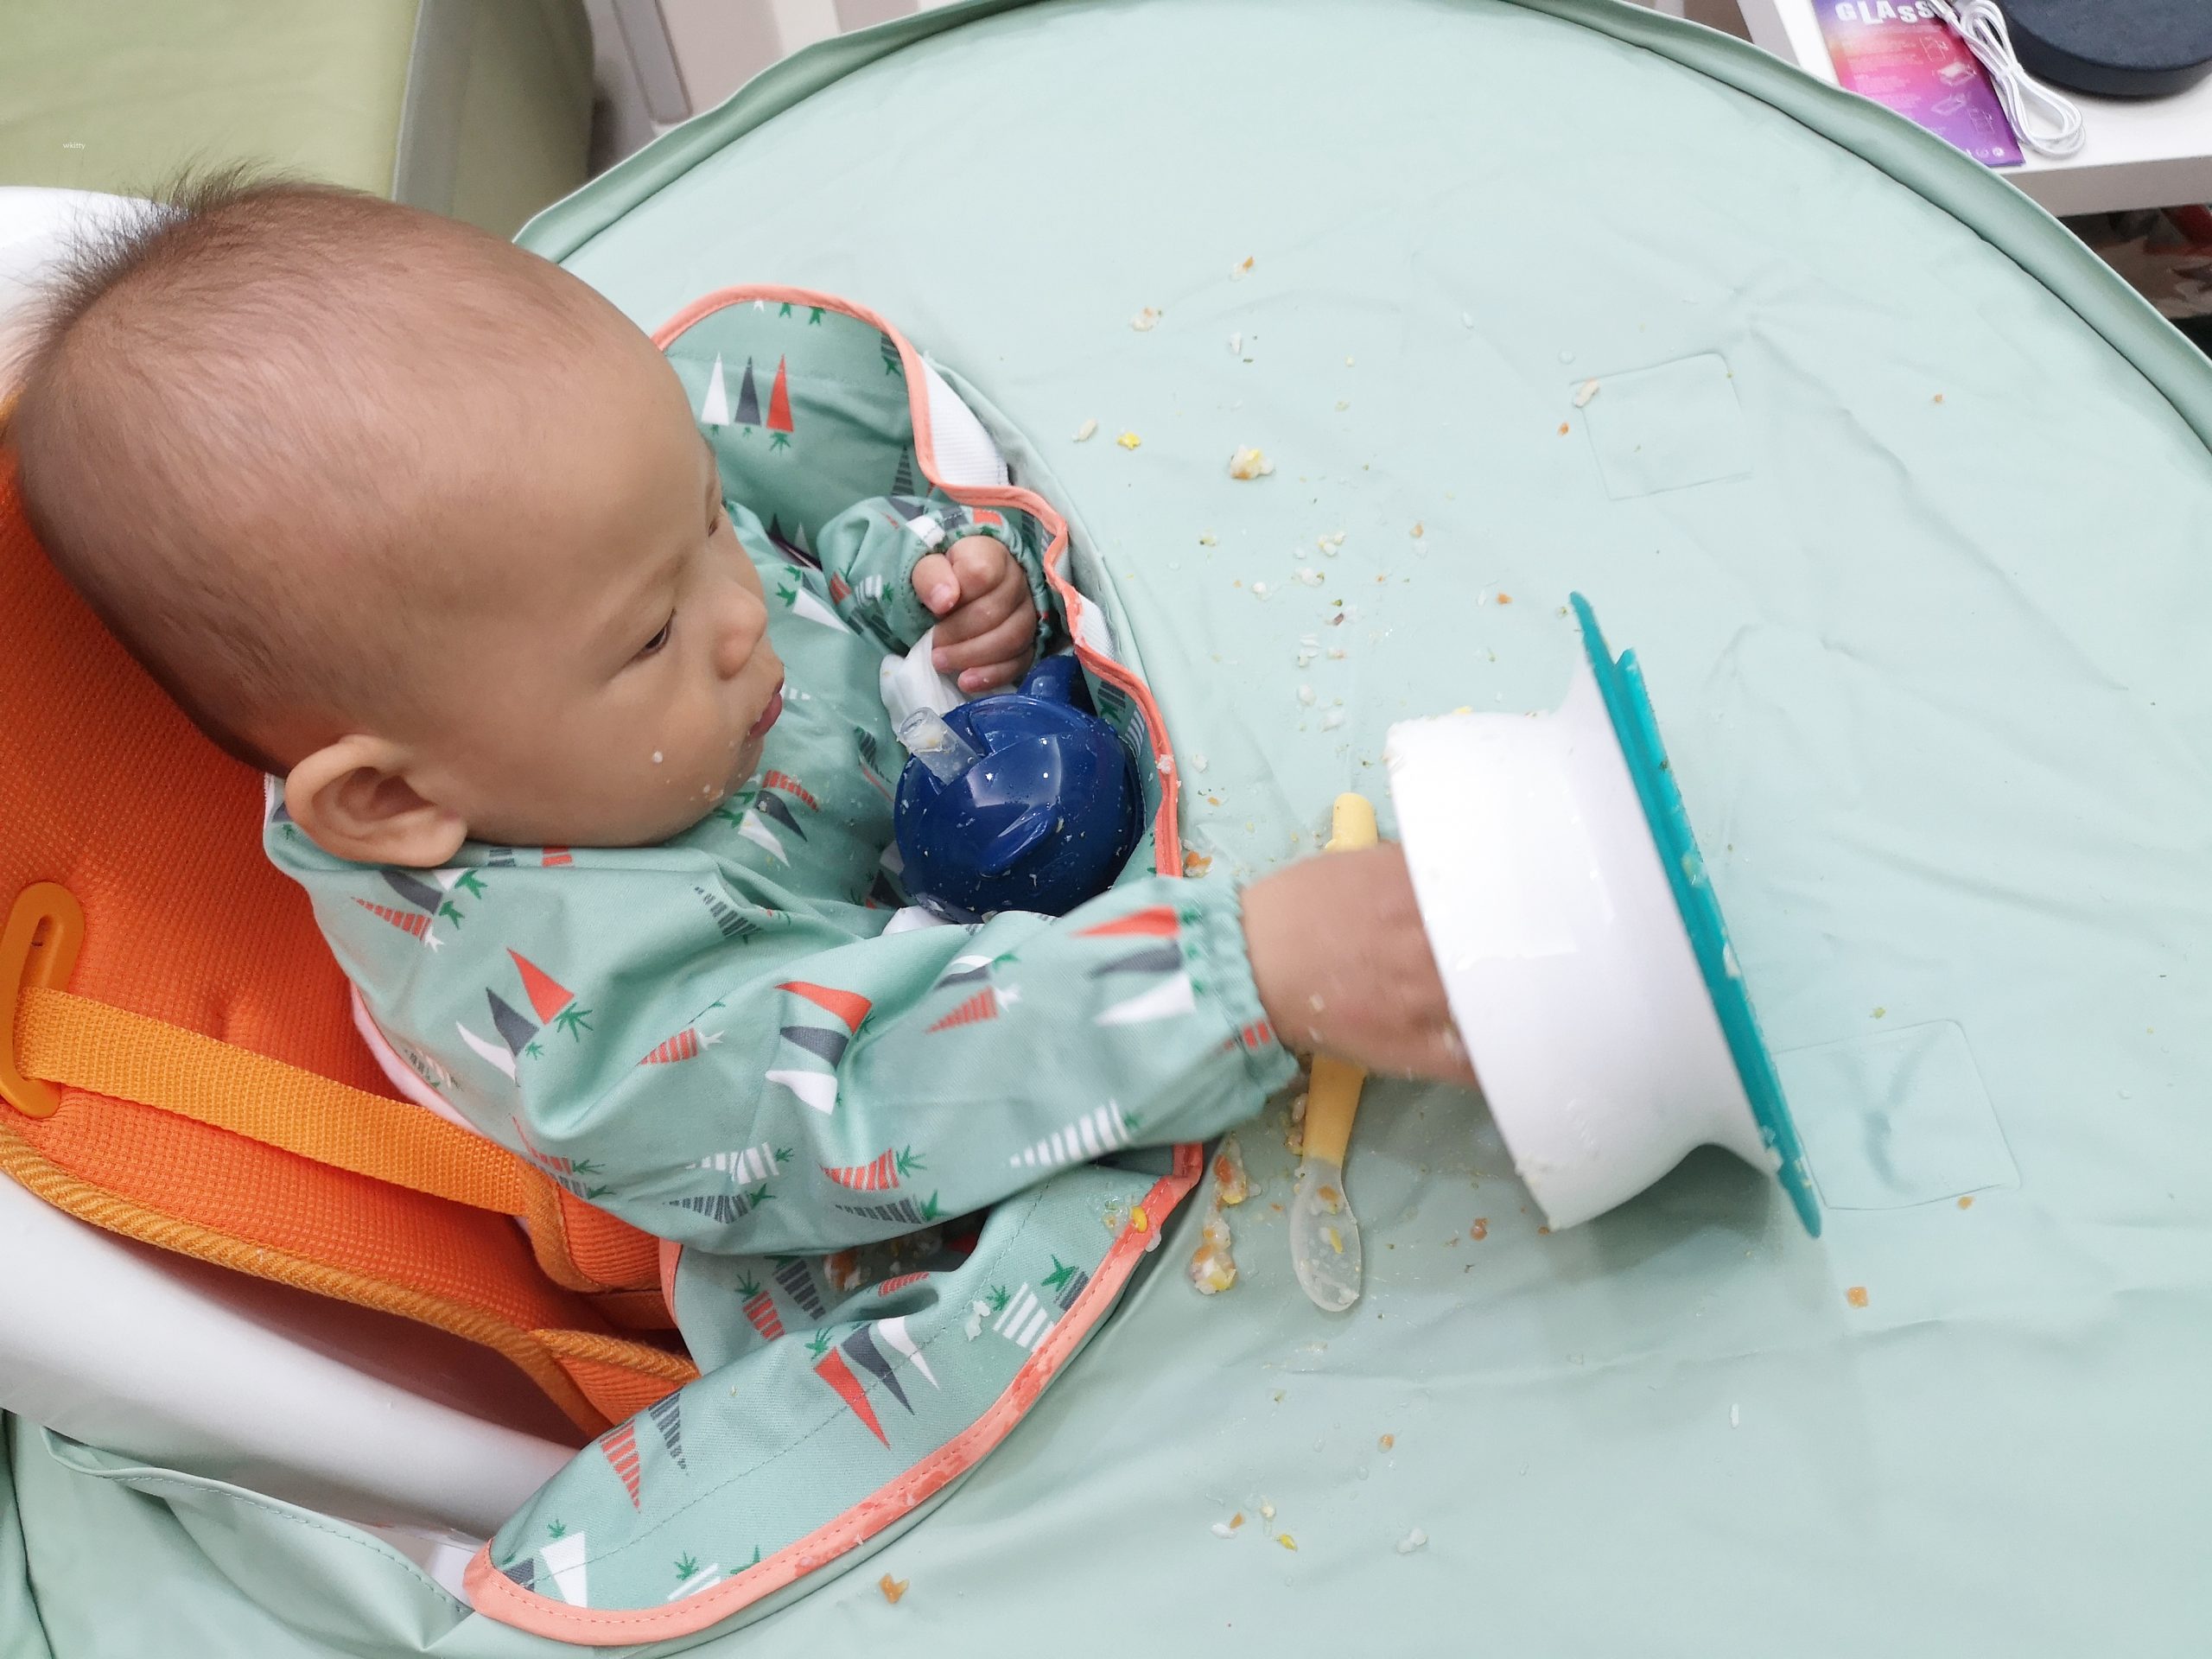 【開團】英國tidy寶寶防髒托盤,寶寶學習吃飯必備的防漏神器+萬用防掉帶 @小環妞 幸福足跡